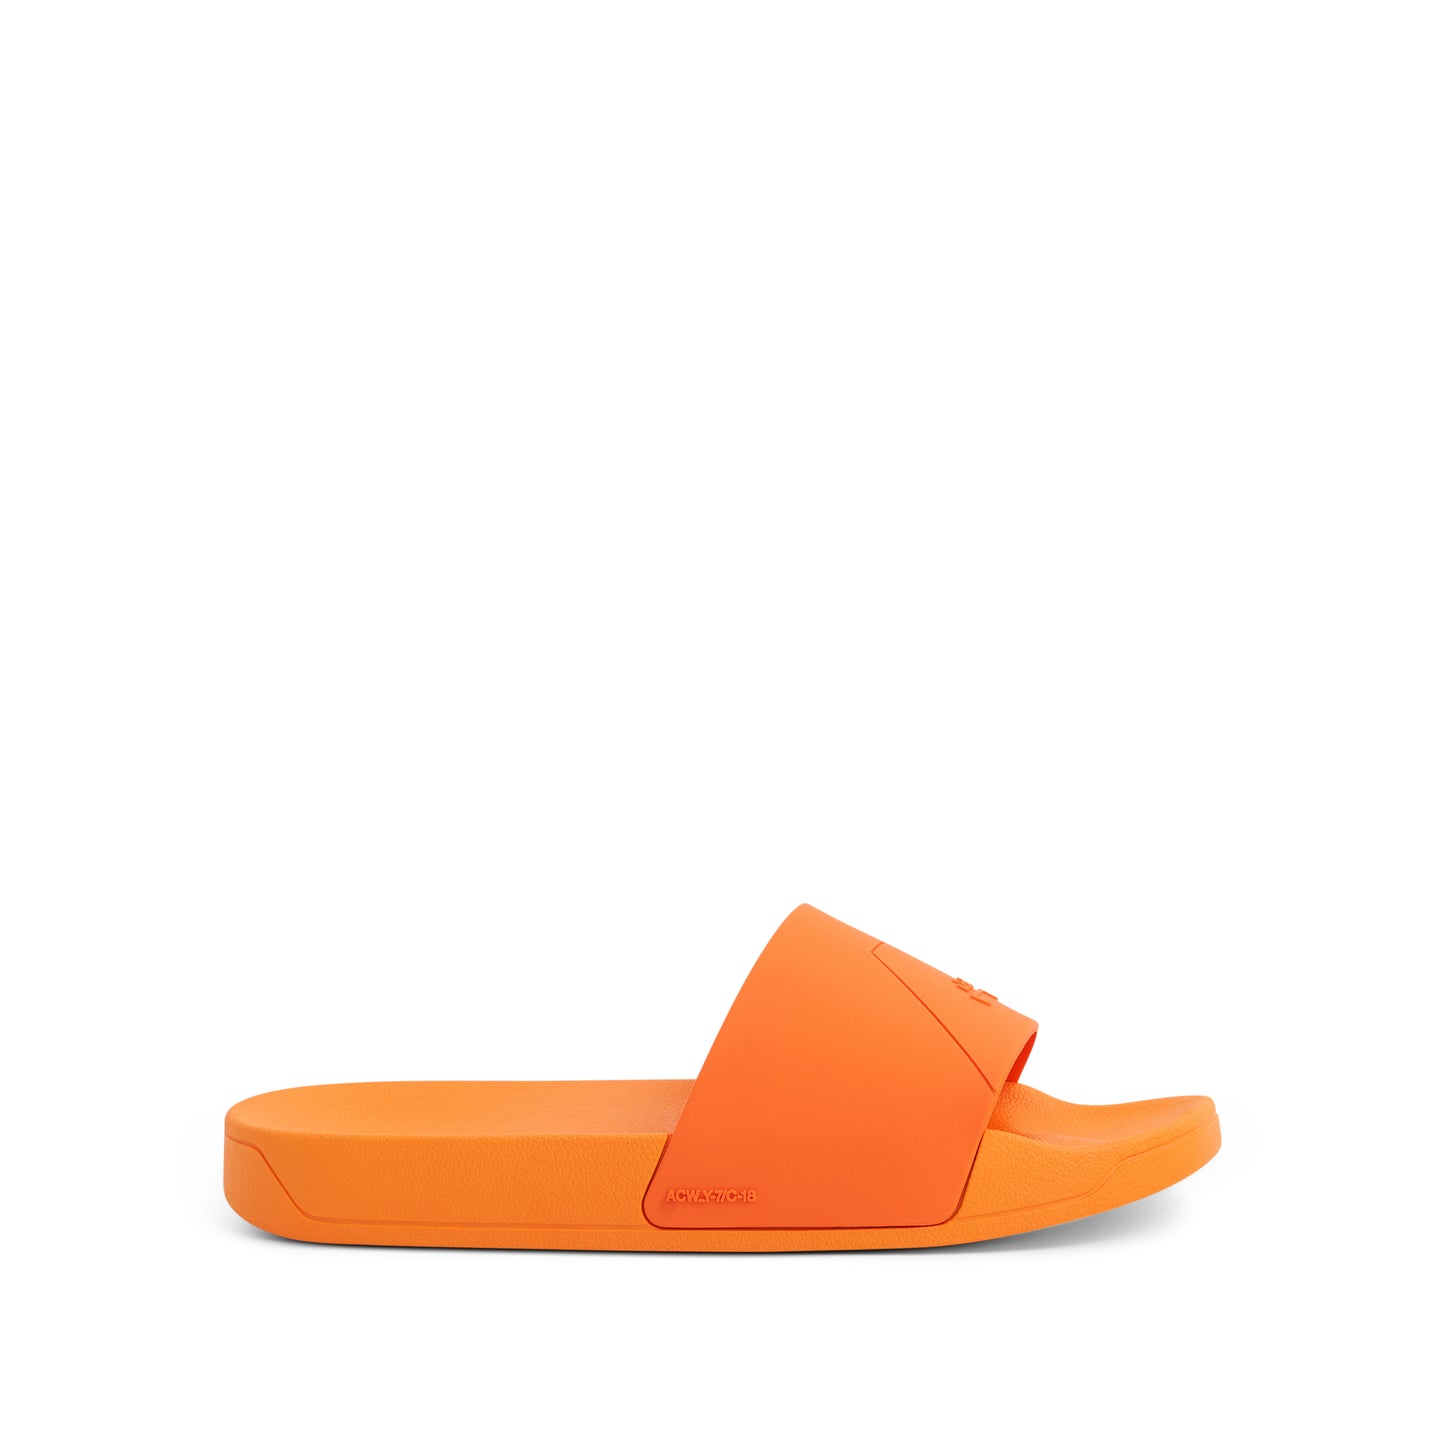 Essential Slides in Bright Orange